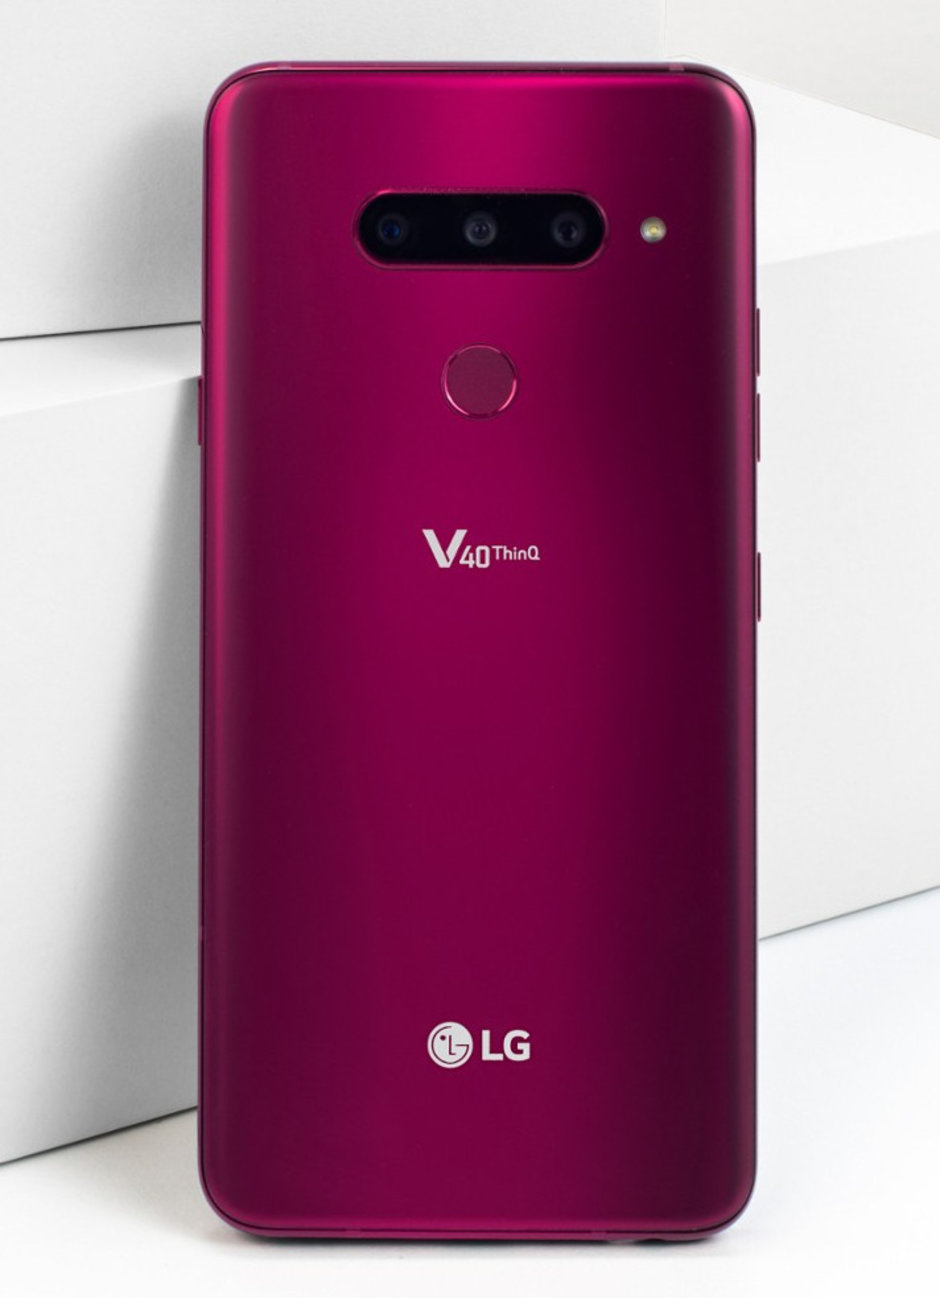 Beş kameralı LG V40 ThinQ tanıtıldı: İşte özellikleri ve fiyatı